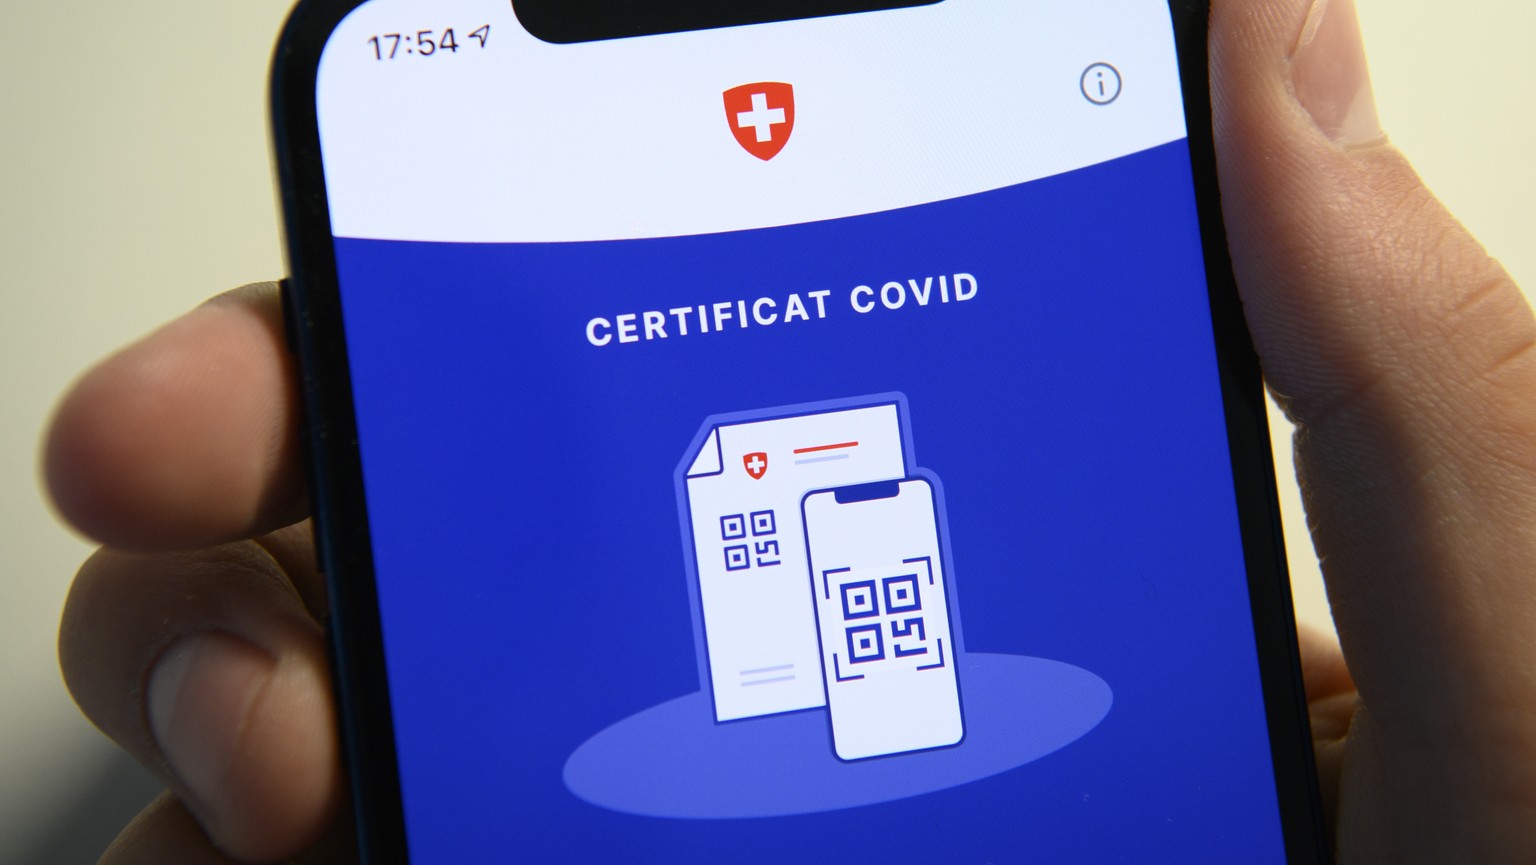 L' APP Certificat Covid est photographiee sur un smartphone Apple le jour de sa mise a disposition sur l'APP Store lors de la pandemie de Coronavirus (Covid-19) ce lundi 7 juin 2021 a Lausanne. (KEYST ...